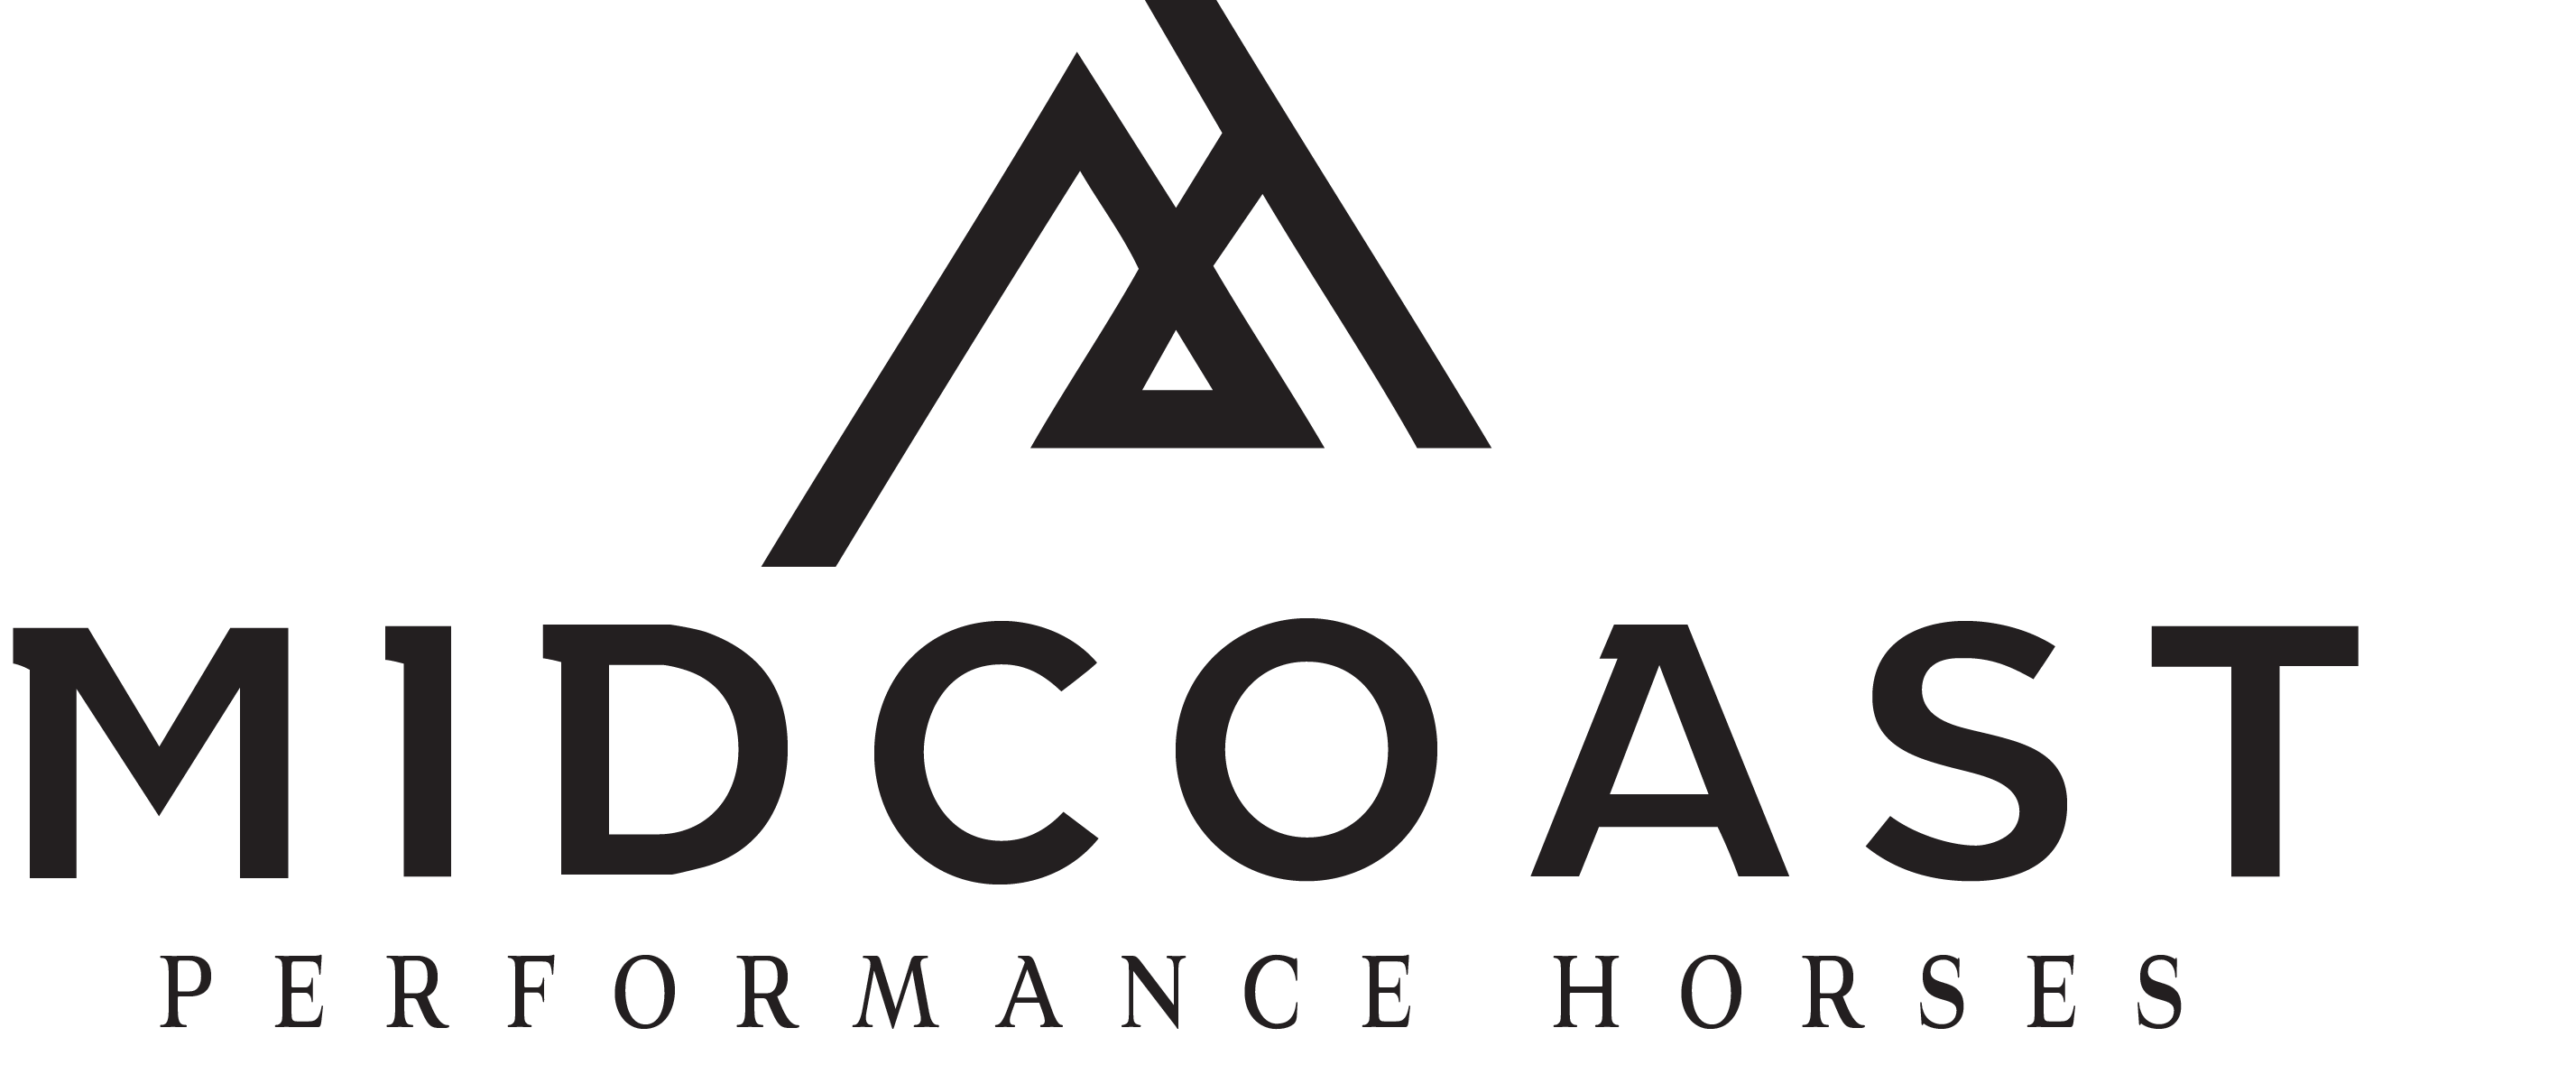 Midcoastperformancehorses Logo